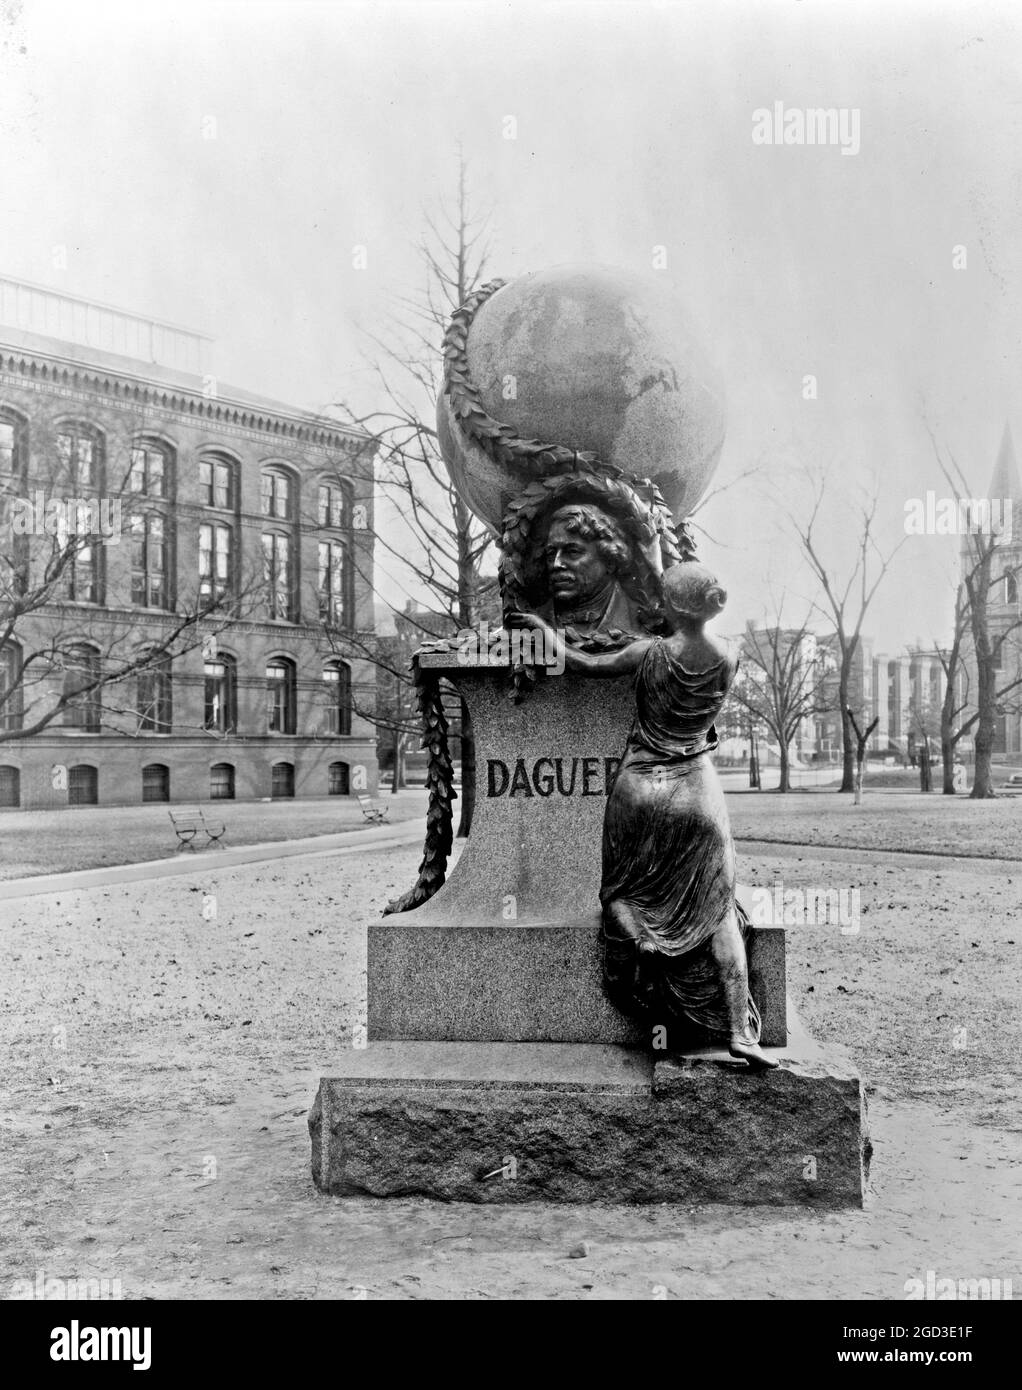 Denkmal für Louis Daguerre auf dem Smithsonian Gelände, Washington, D.C. Ca. [Zwischen 1909 und 1932] Stockfoto